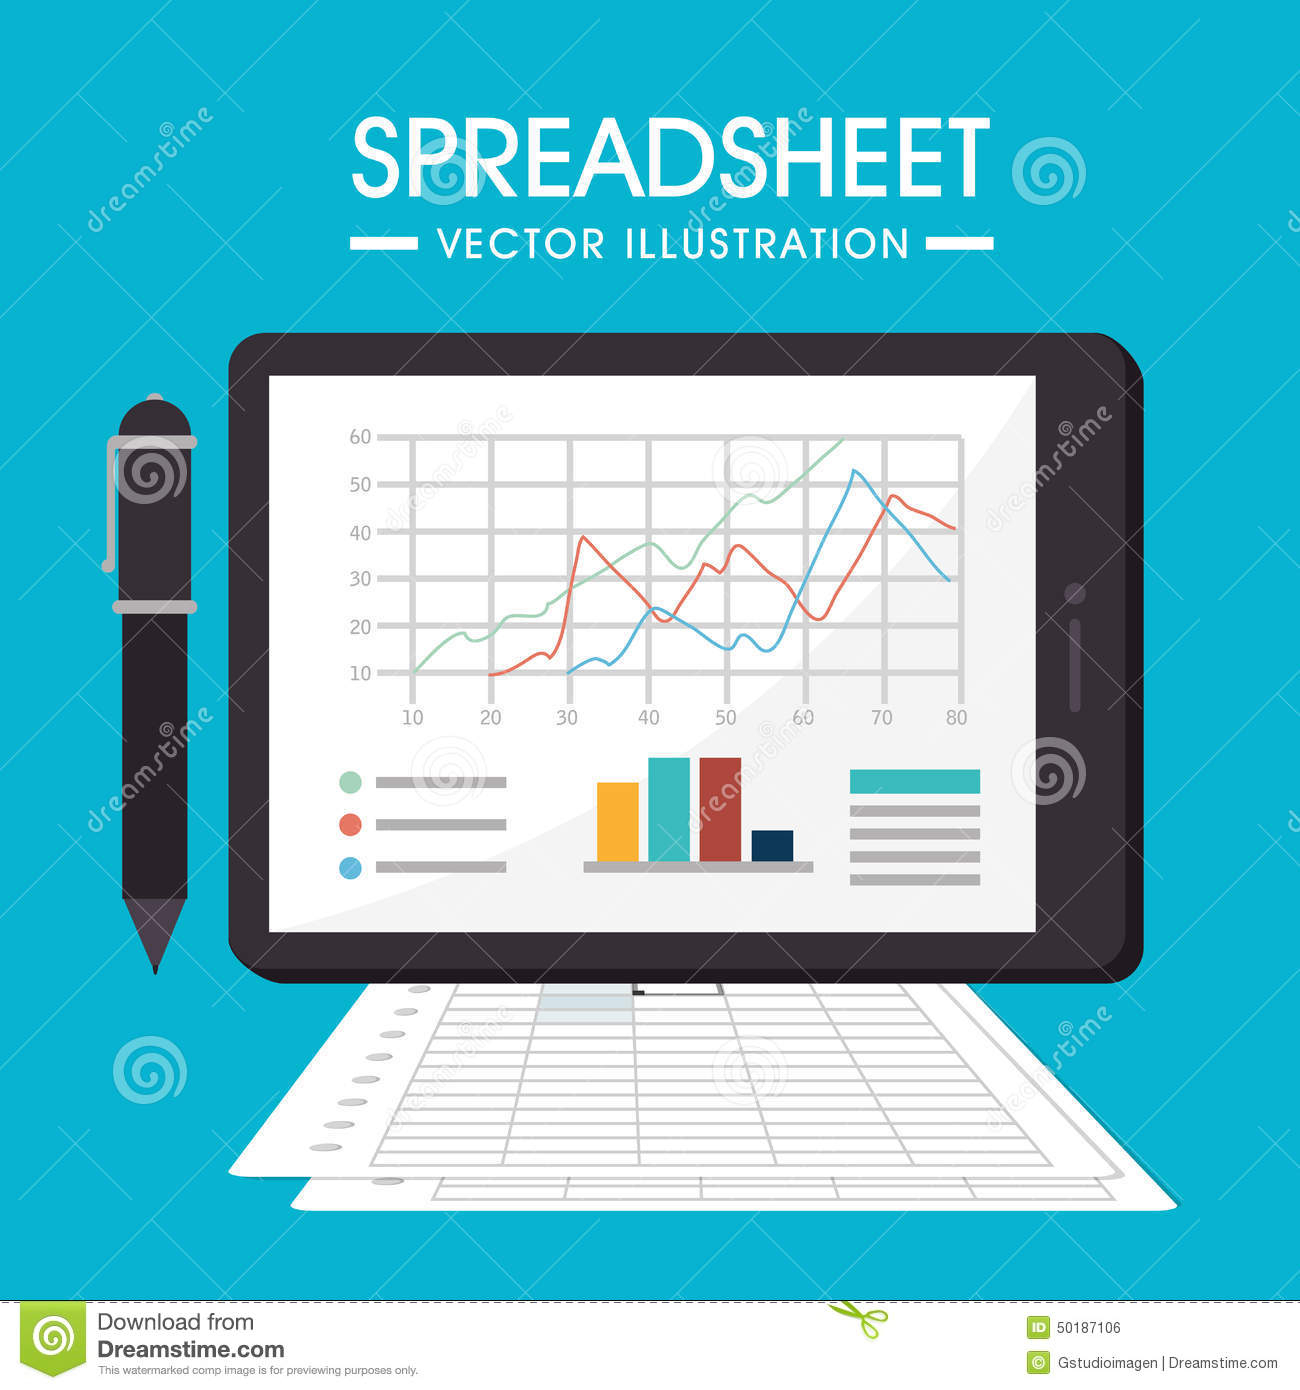 Spreadsheet Graphics Intended For Spreadsheet Design, Vector Illustration. Stock Vector  Illustration